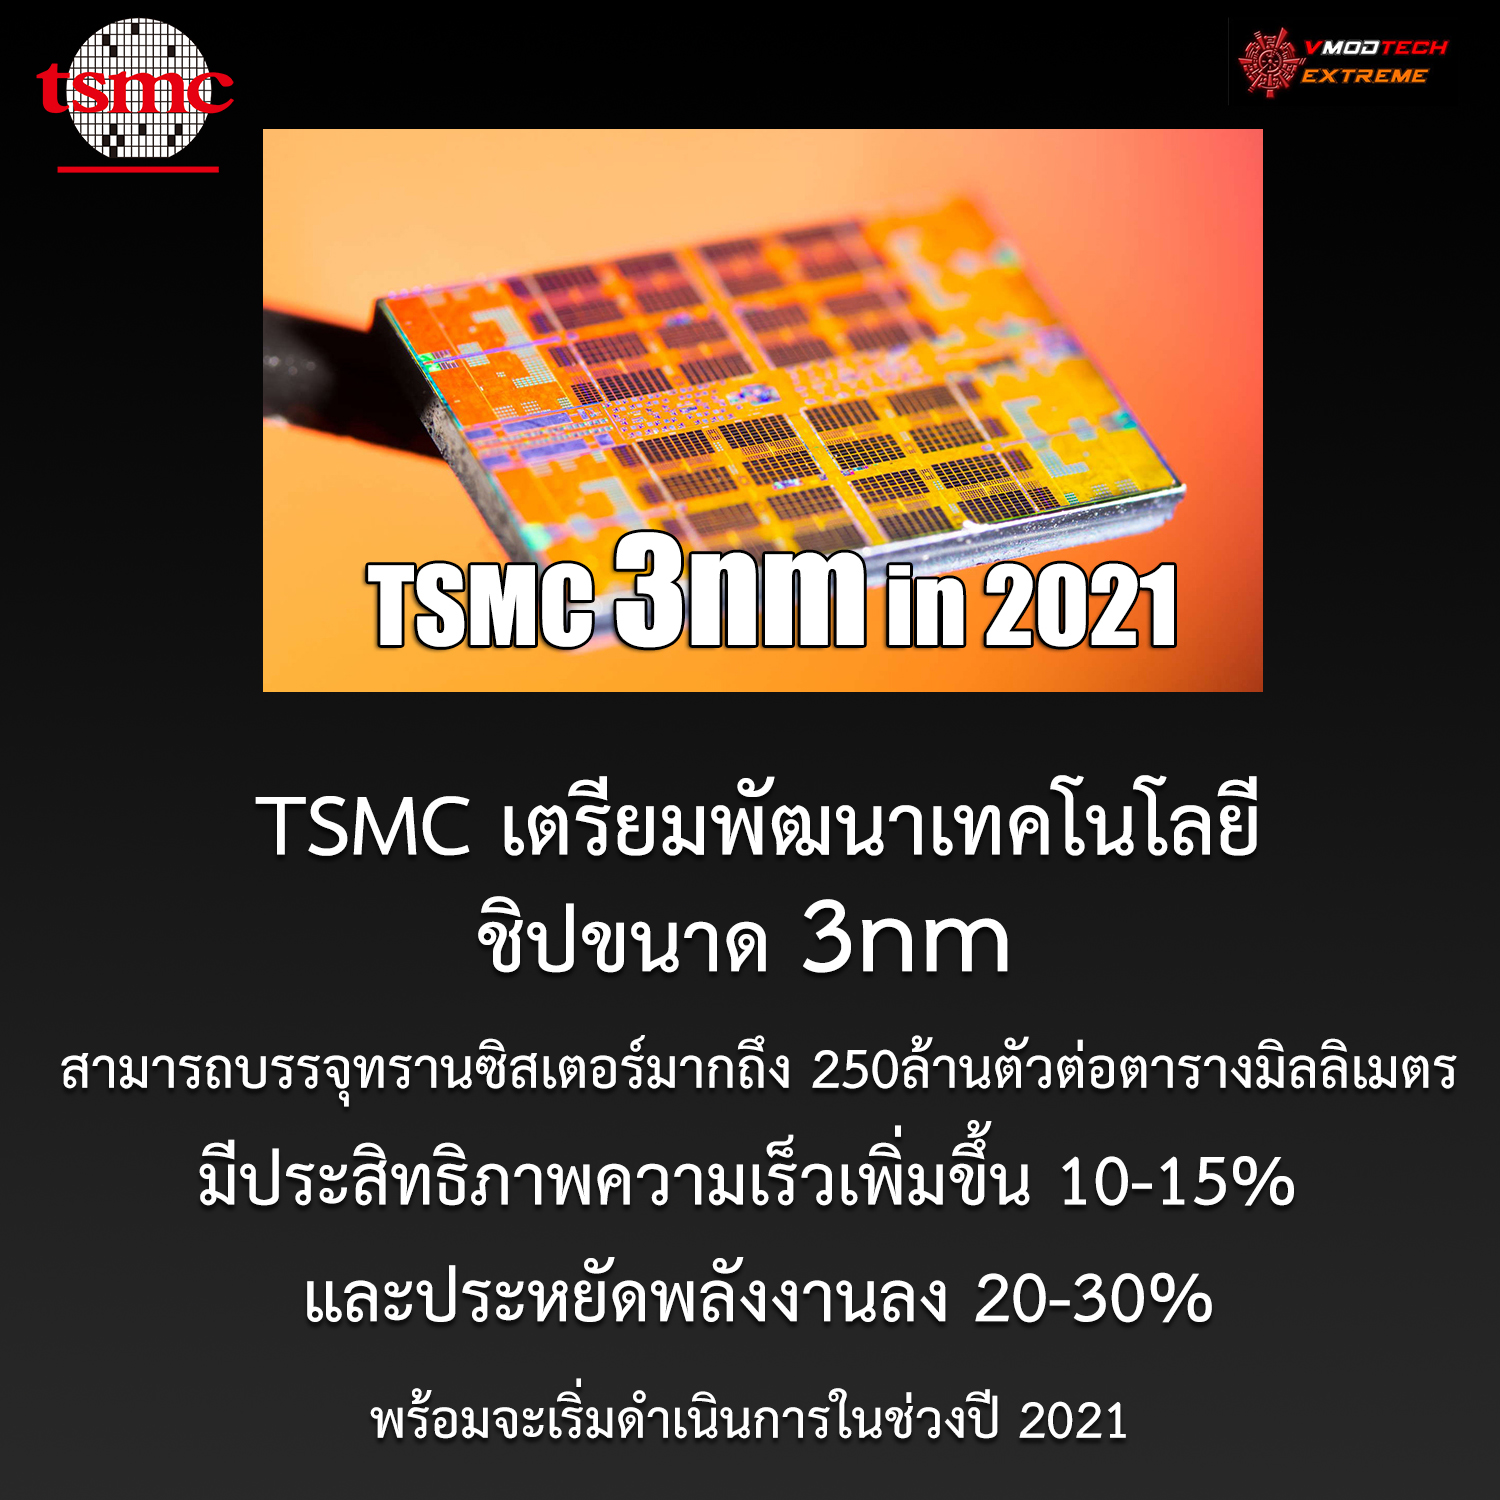 tsmc 3nm 2021 TSMC กำลังมีแผนพัฒนาชิปเทคโนโลยีขนาด 3nm ในอนาคตที่บรรจุทรานซิสเตอร์มากถึง 250ล้านตัวต่อตารางมิลลิเมตรกันเลยทีเดียวและพร้อมจะเริ่มดำเนินในช่วงปี 2021 